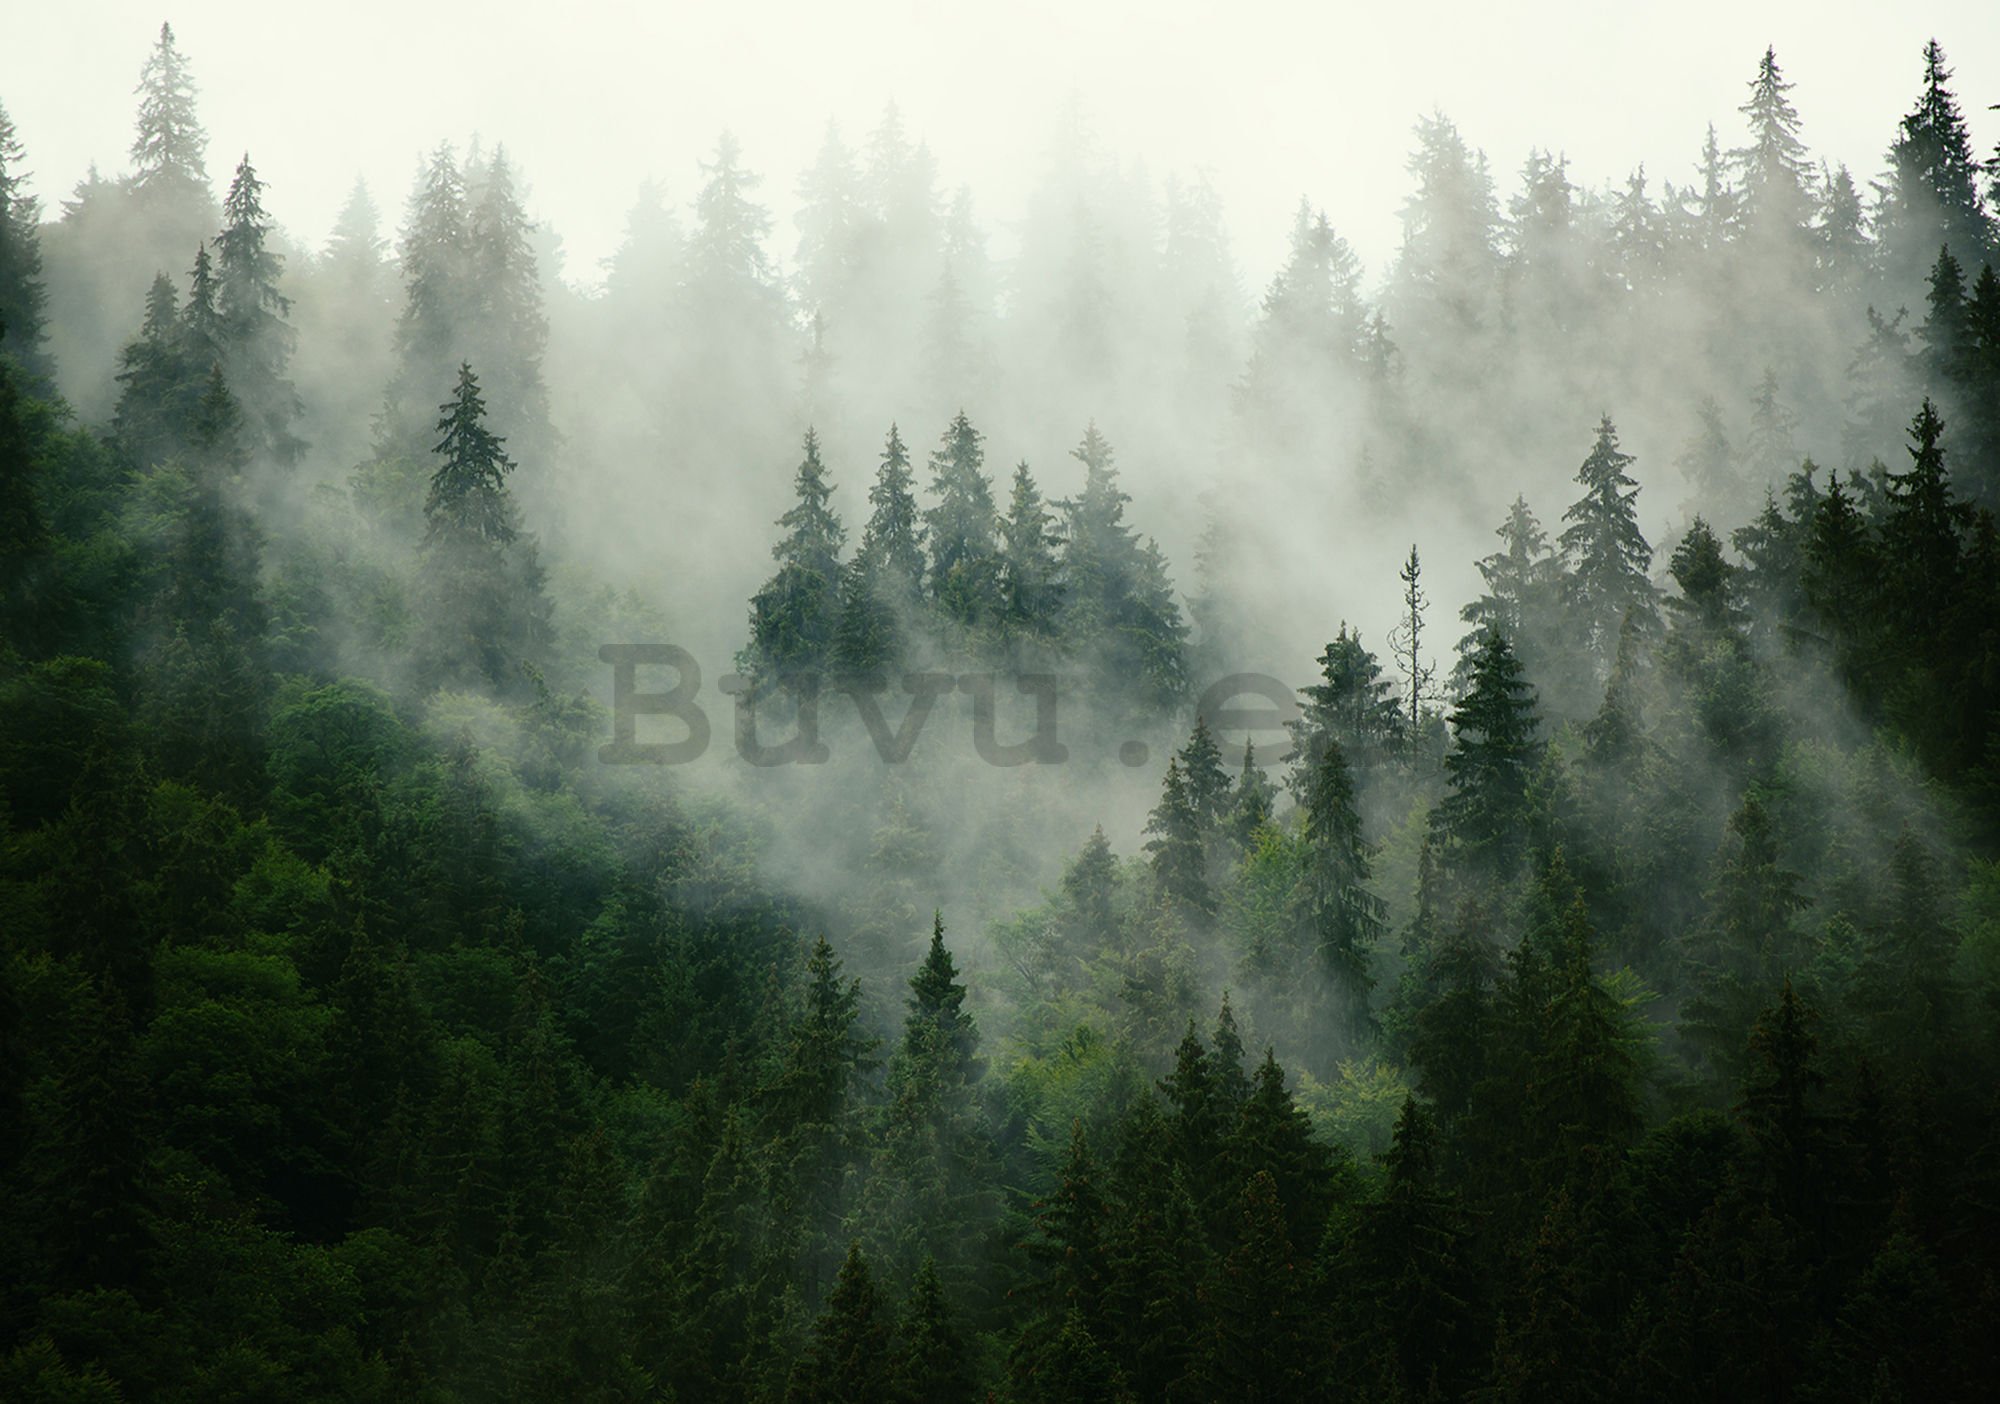 Fotomural: Niebla sobre el bosque (1) - 184x254 cm